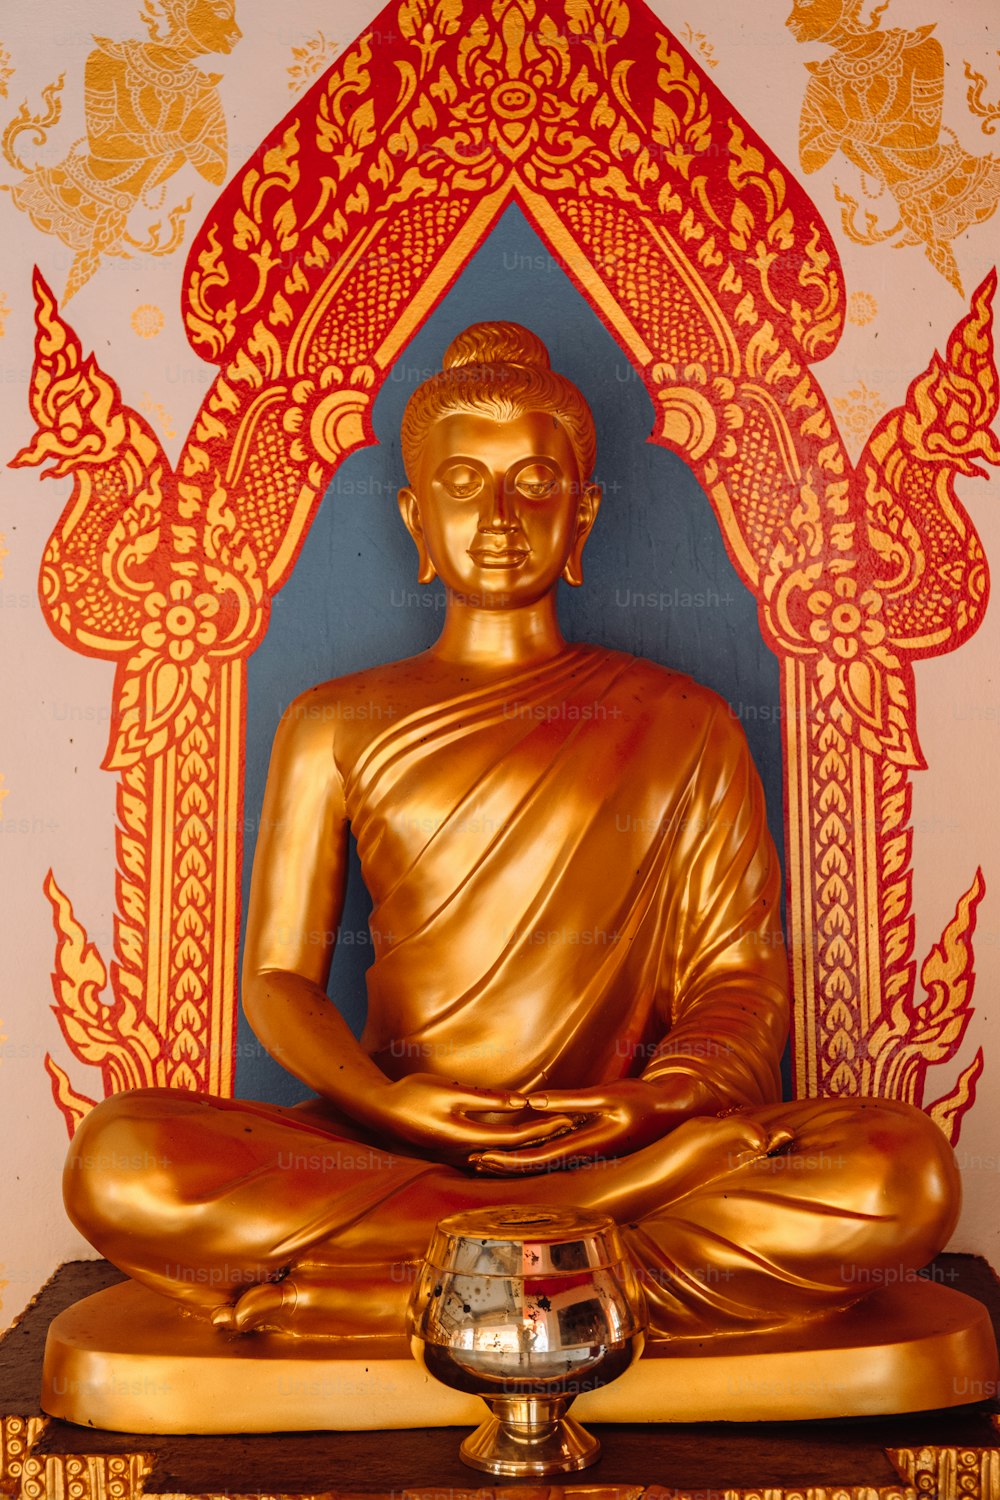 Eine goldene Buddha-Statue sitzt auf einem Holztisch